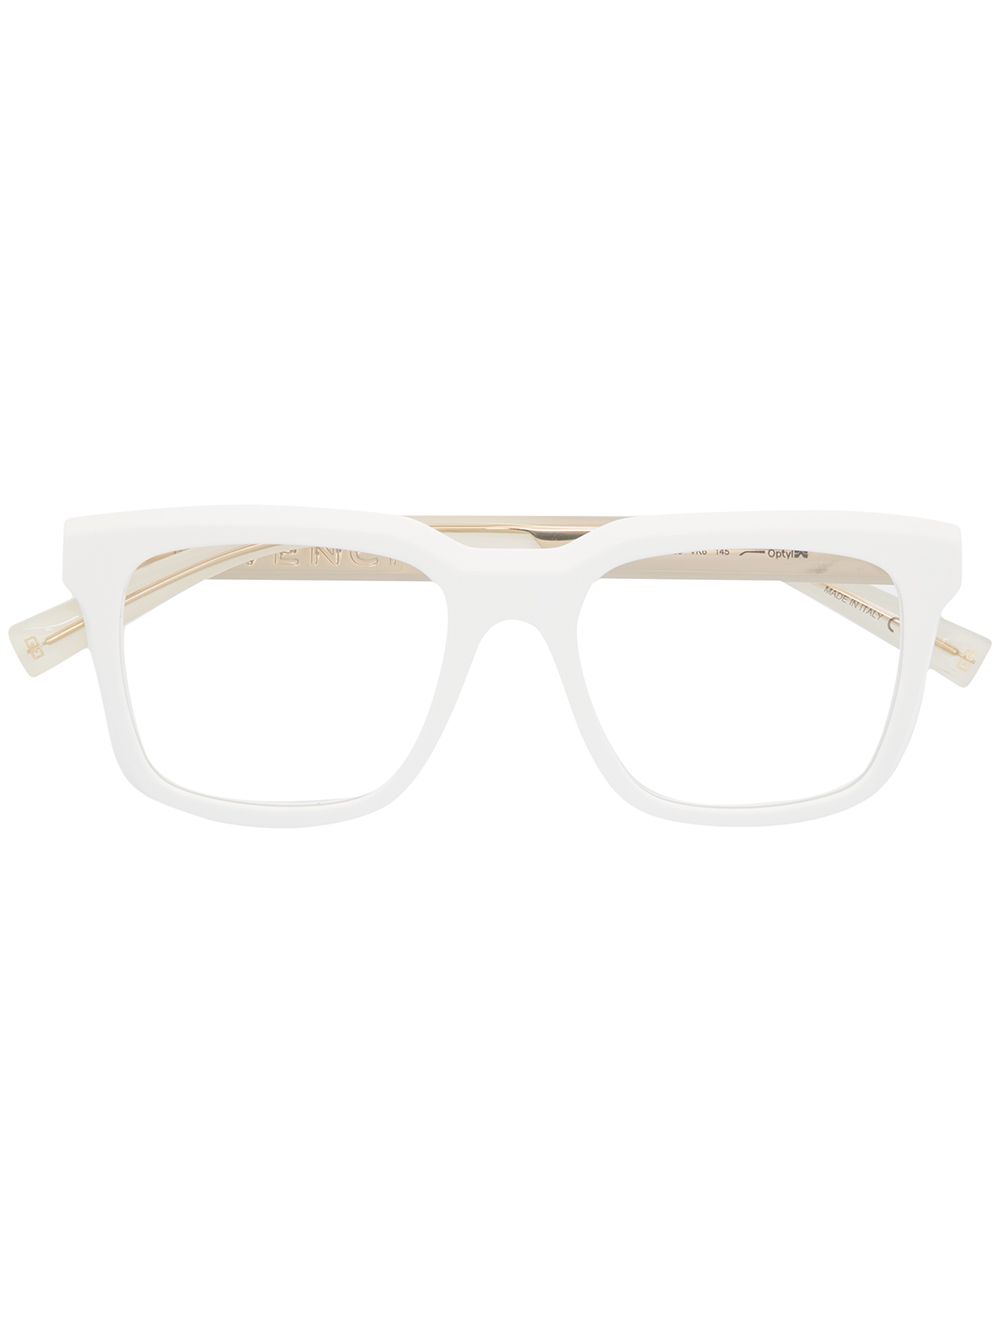 фото Givenchy eyewear очки в квадратной оправе